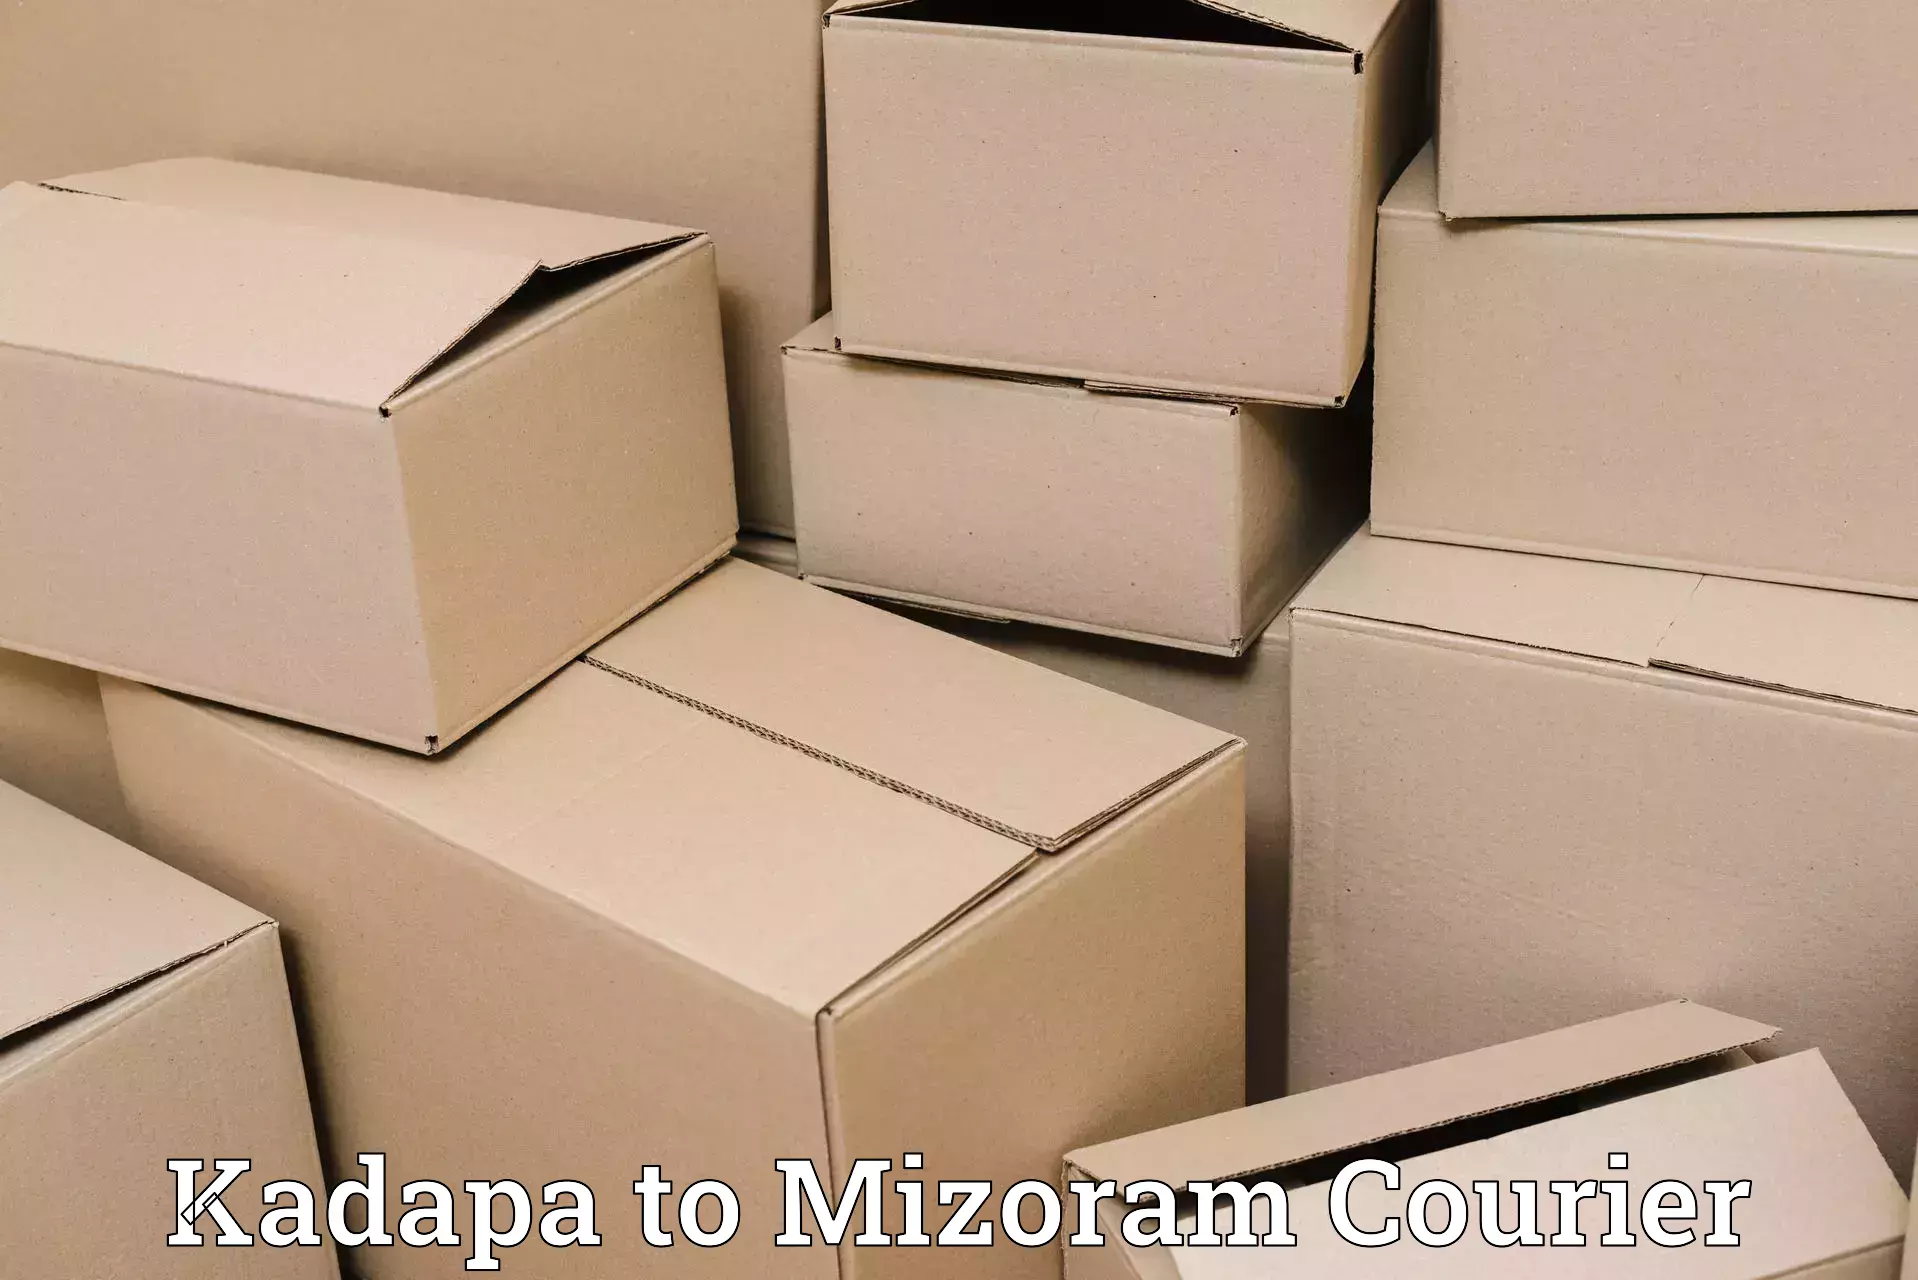 Automated shipping processes Kadapa to Thenzawl